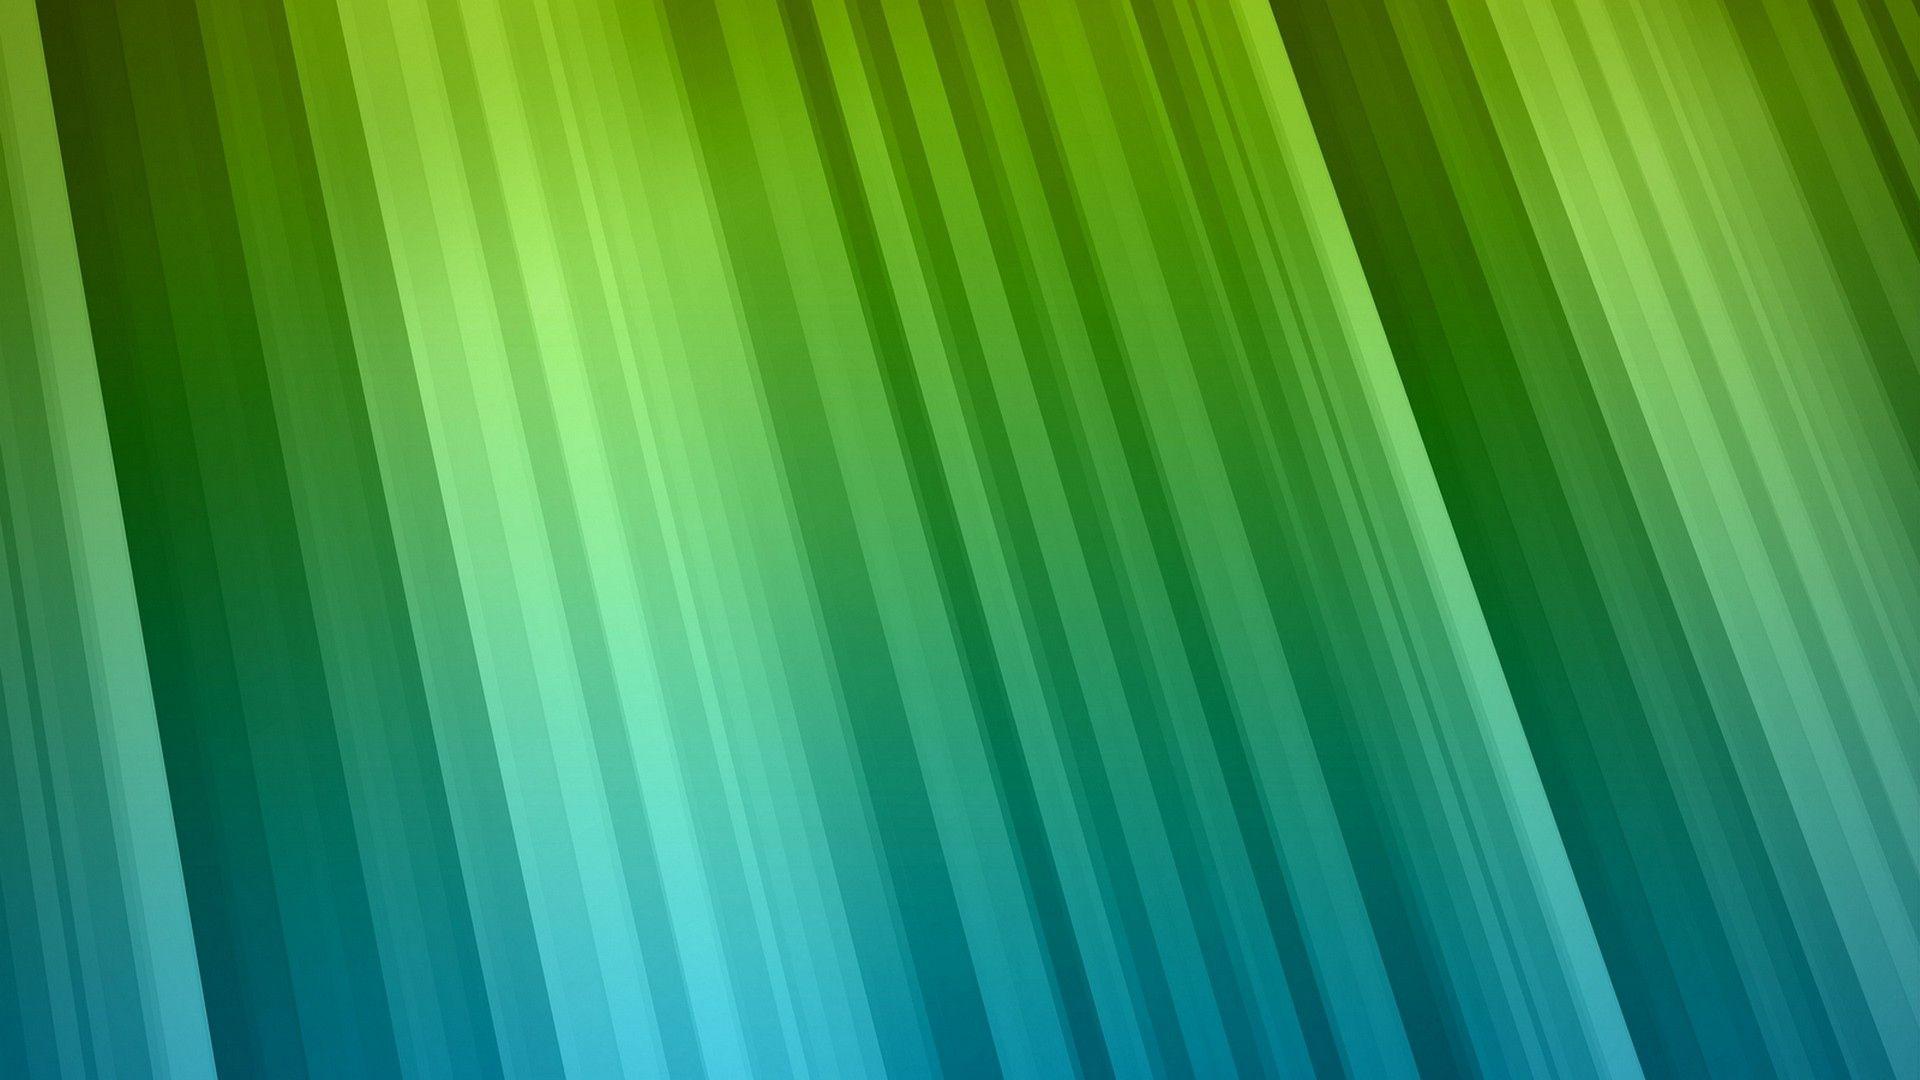 Light Green Wallpapers - Top Free Light Green Backgrounds - WallpaperAccess